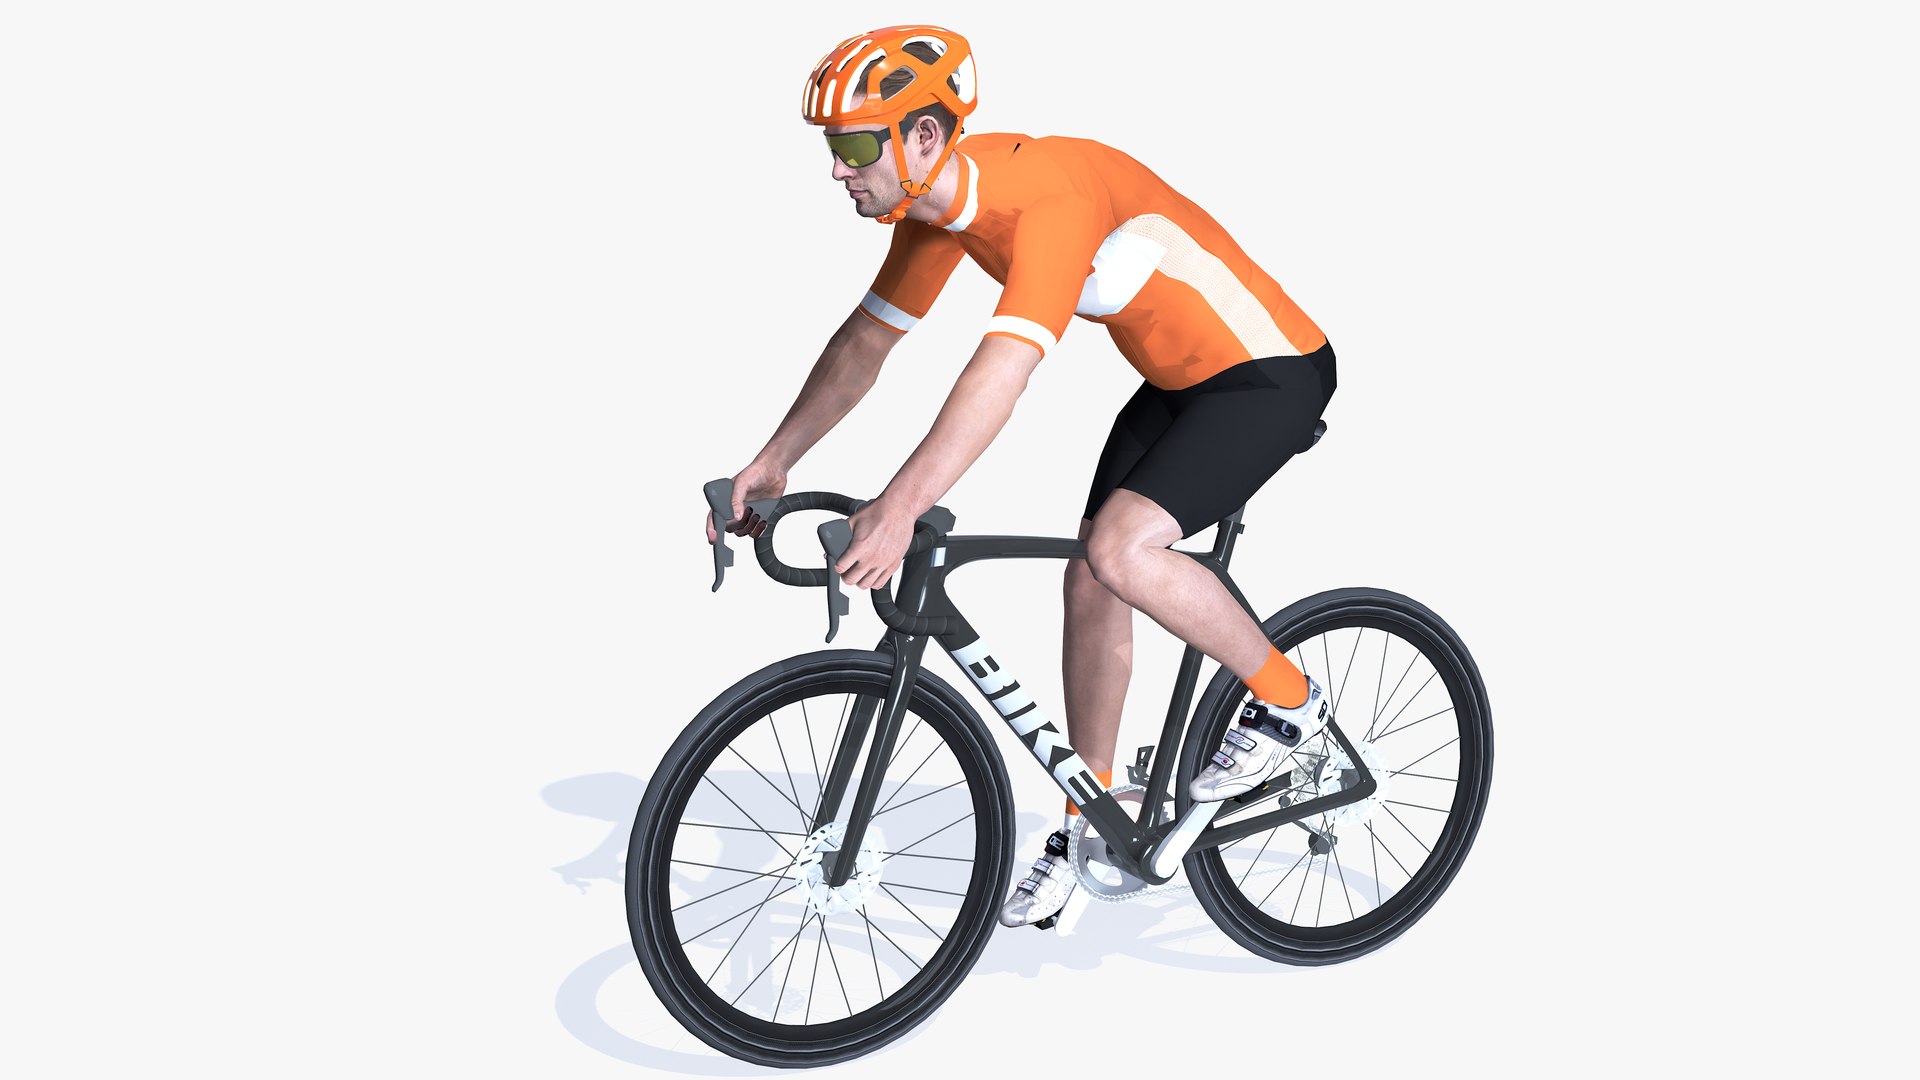 Cyclist Road 3D model - TurboSquid 2067115